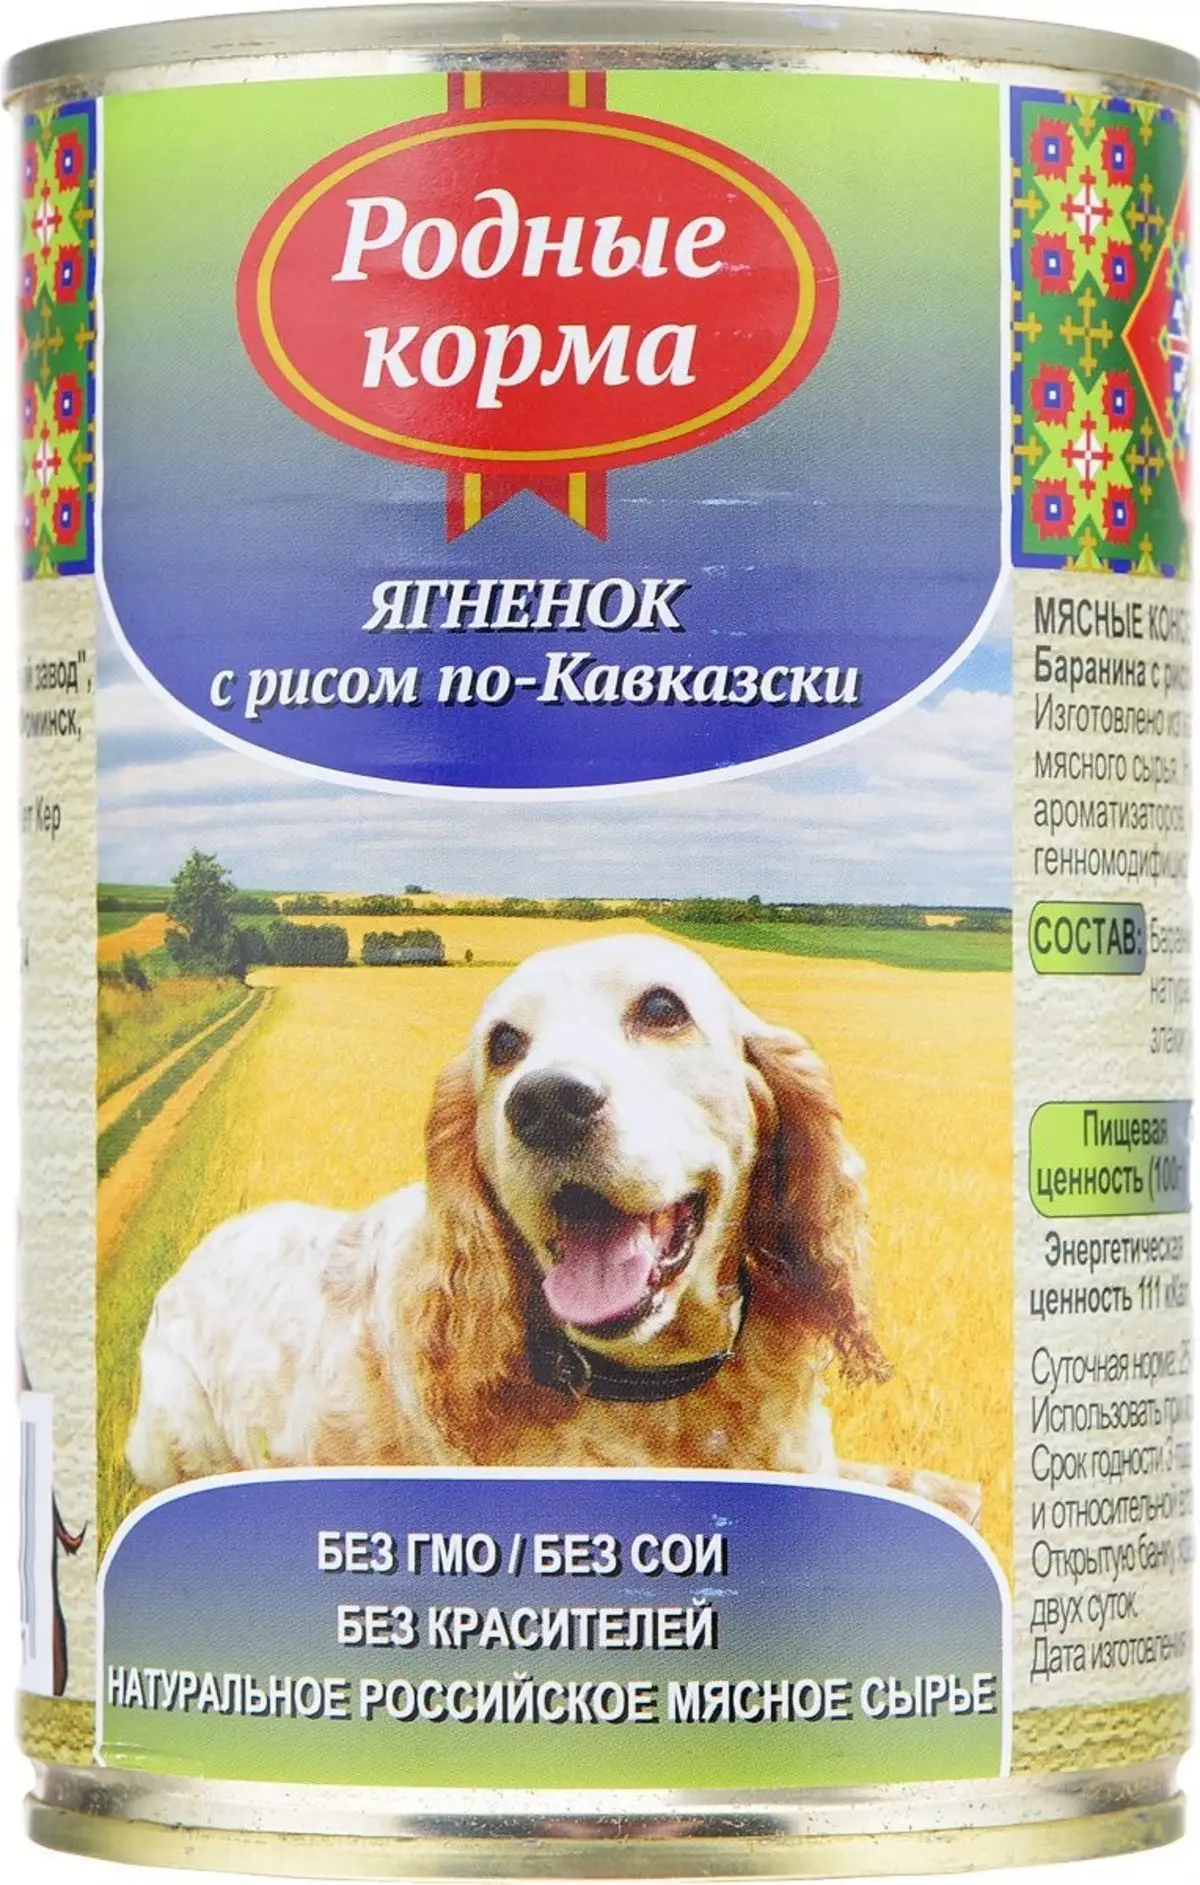 Tăng cấp cao cấp cho chó (43 ảnh): Xếp hạng nguồn cấp dữ liệu tốt nhập khẩu cho chó con, danh sách thức ăn cho chó Nga và Đức 12254_14